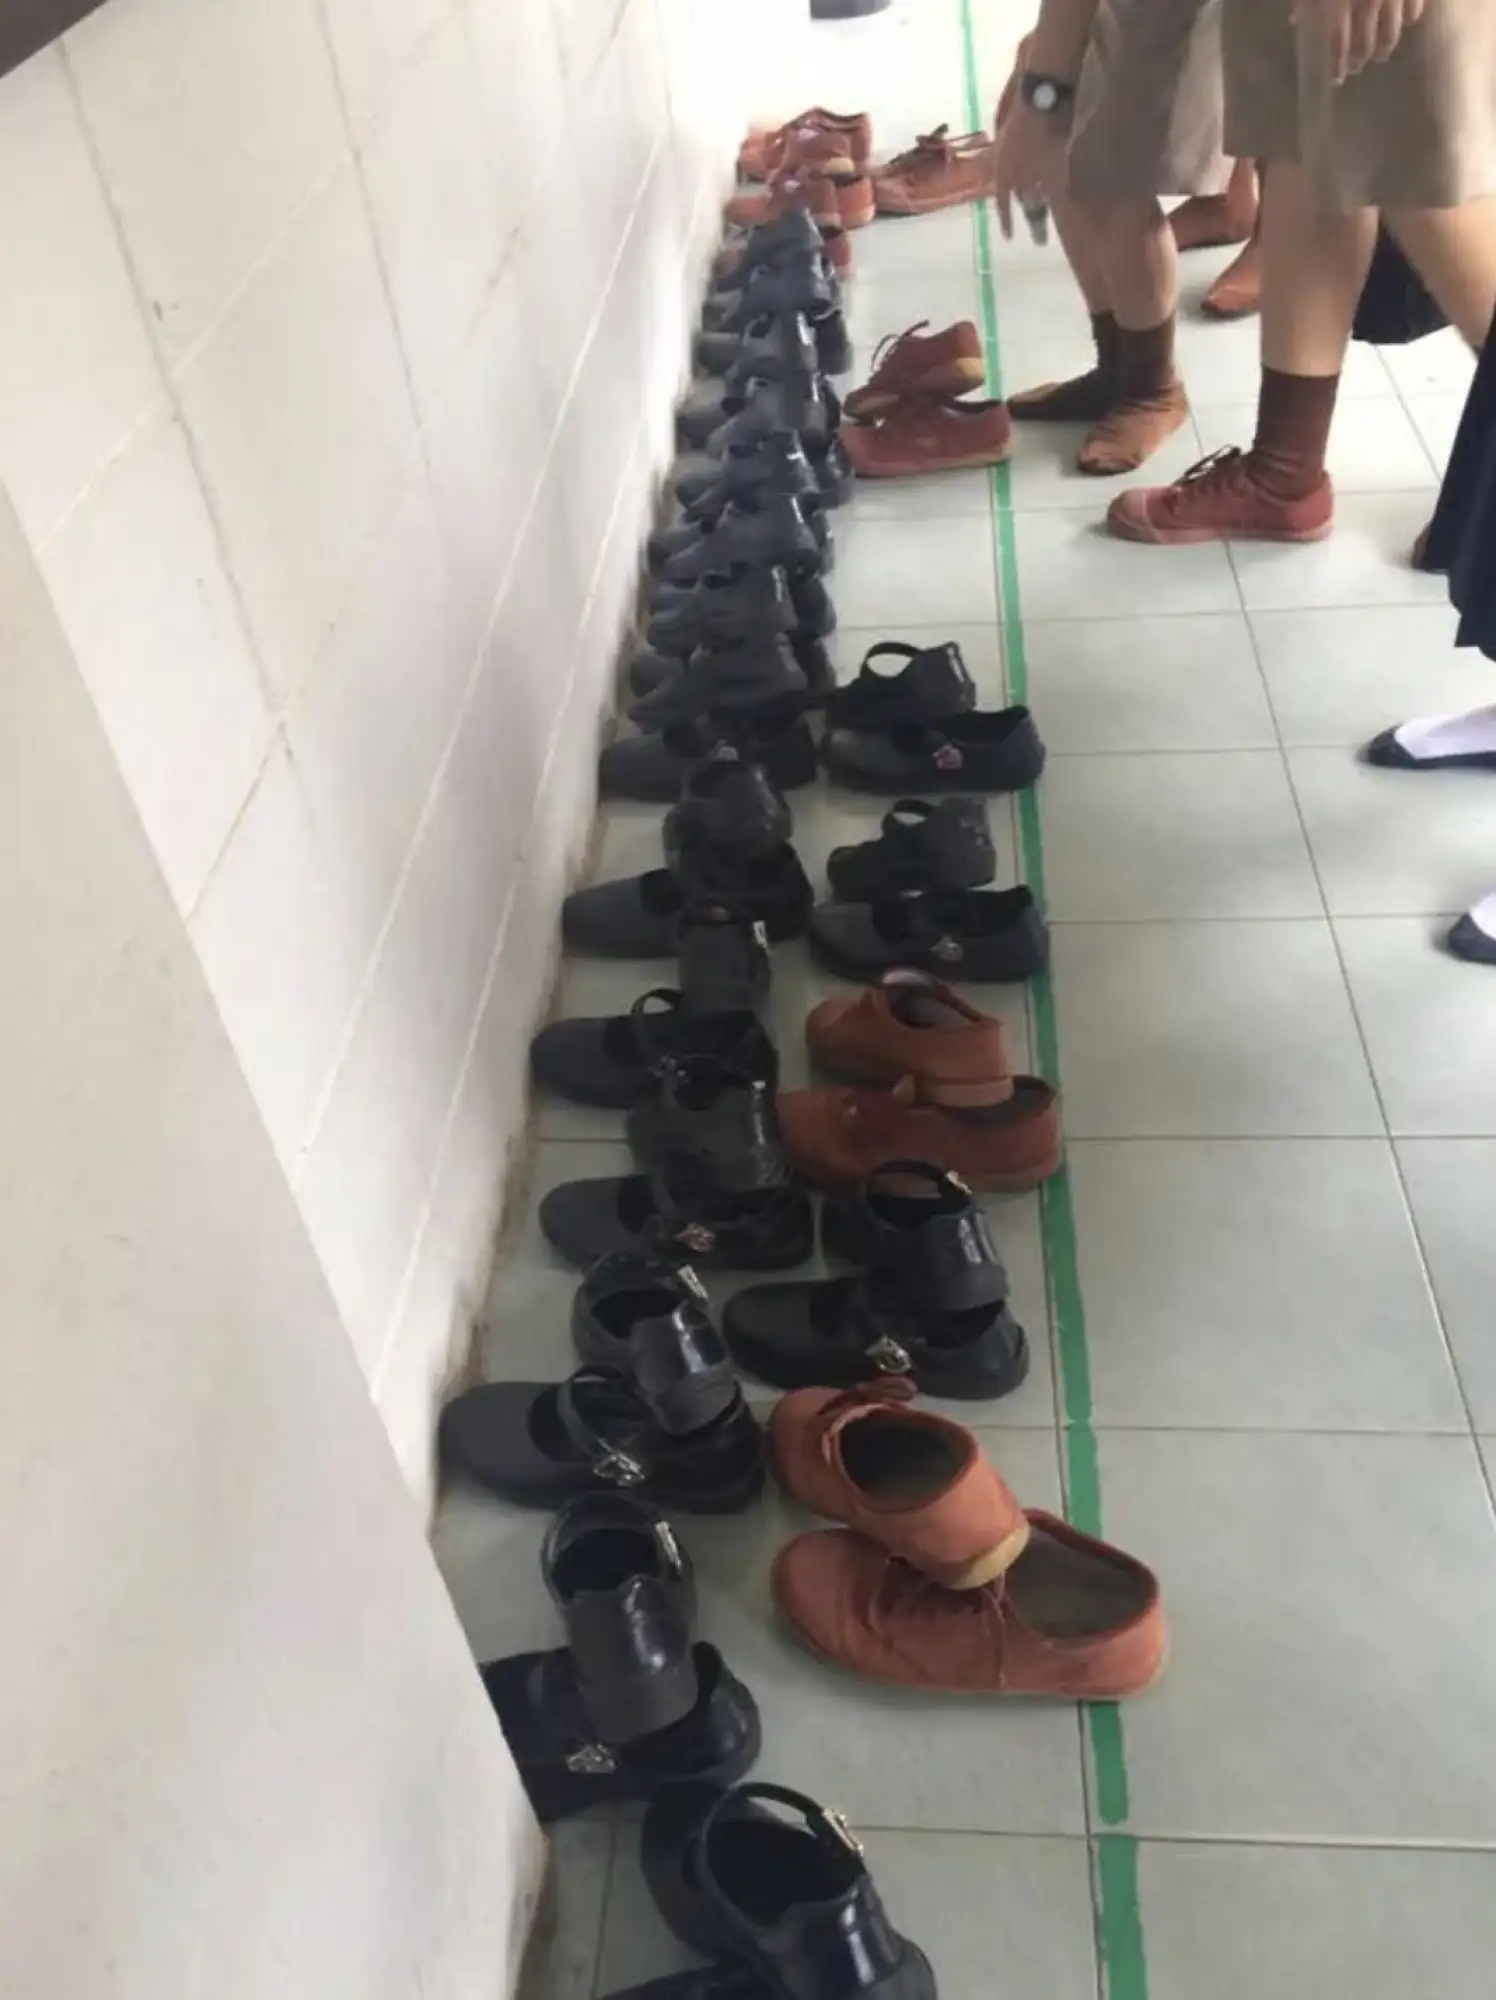 进教室前要脱鞋（图片来源：沪江泰语）